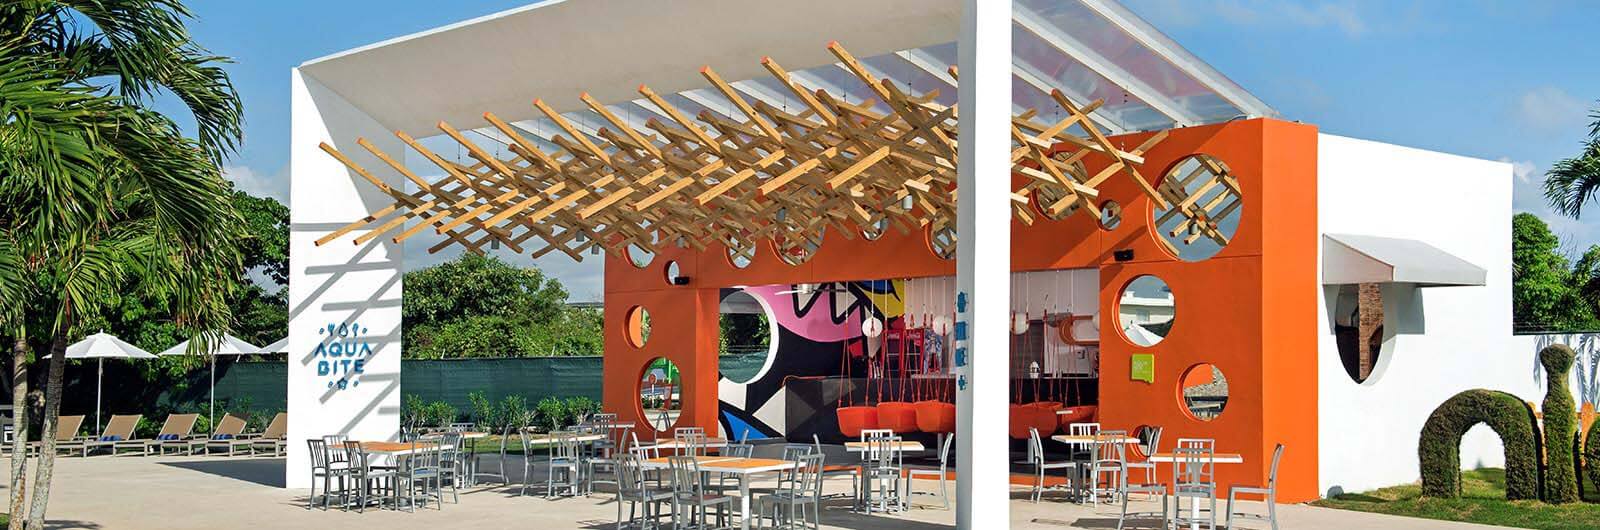 Nickelodeon Resort Punta Cana Restaurants and Bars - Aqua Bite